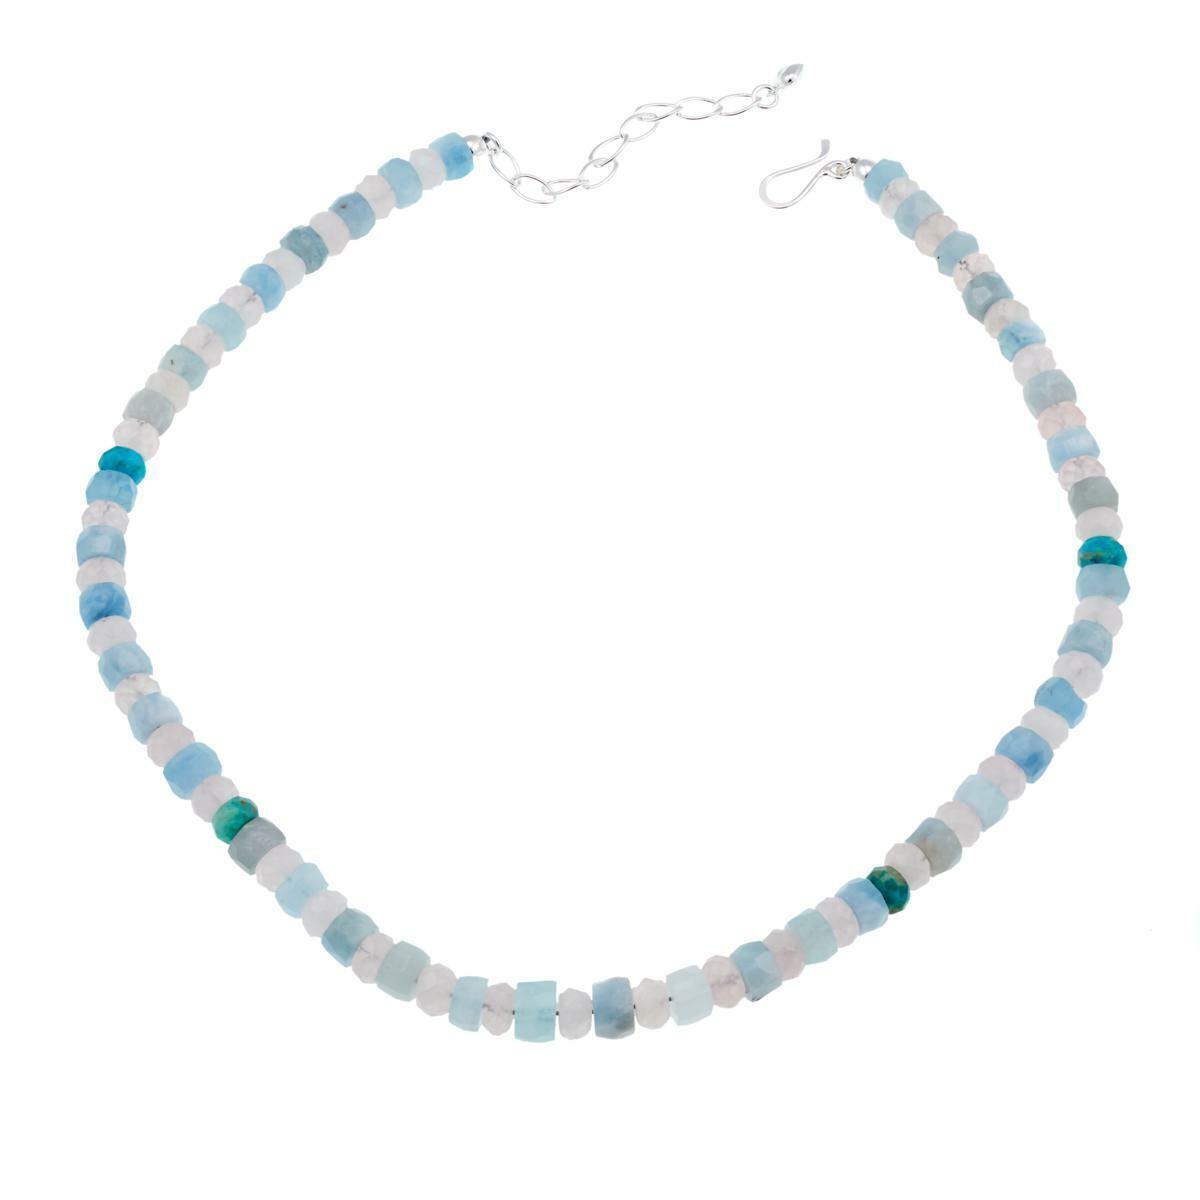 Jay King Aquamarine, Rose Quartz and Turquoise Bead 18" Necklace.